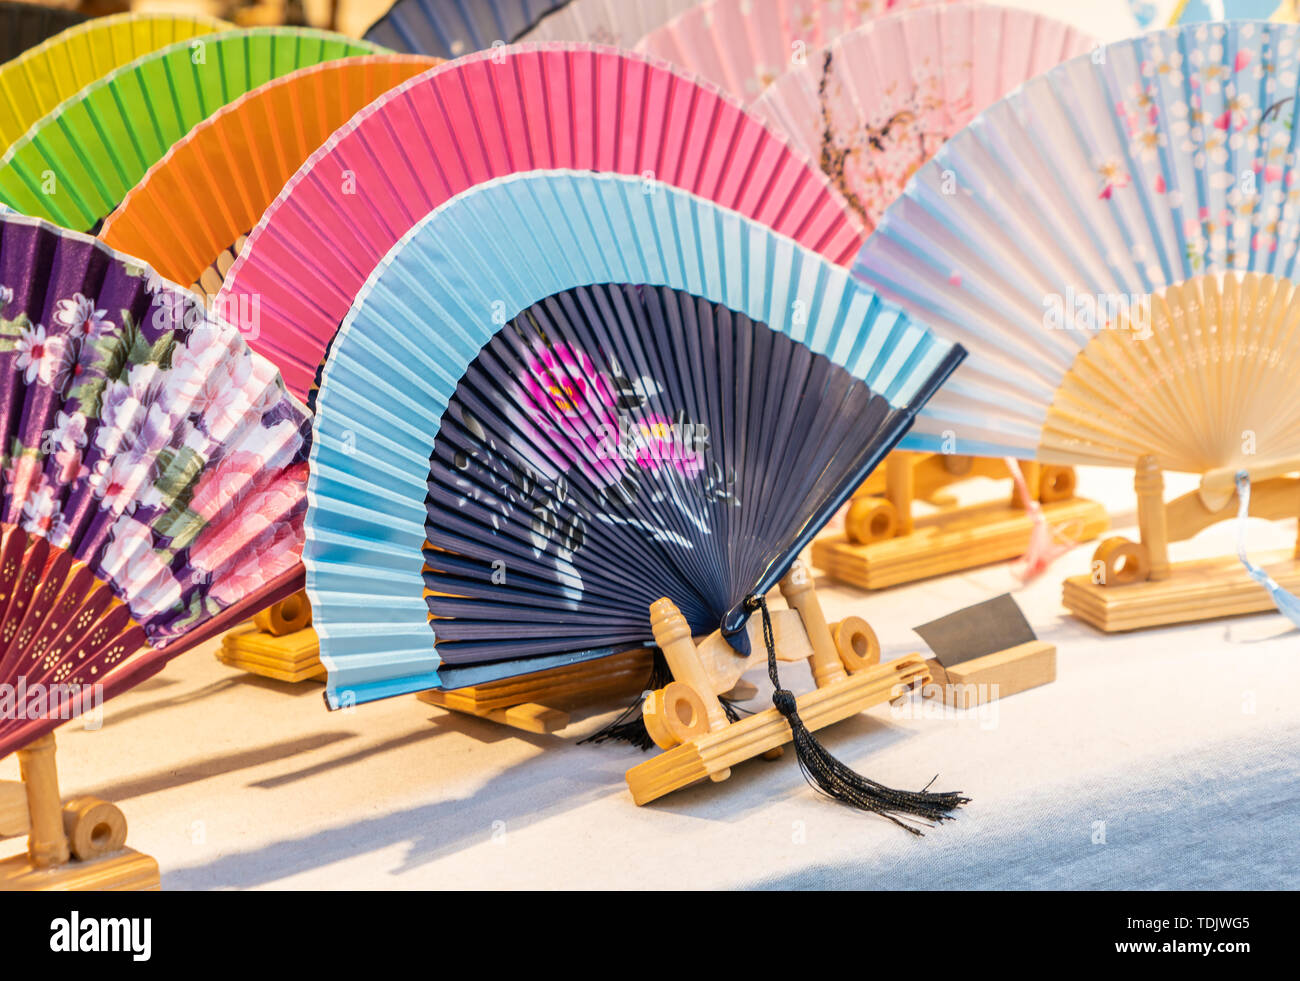 Une variété de soie chinoise traditionnelle affiche des fans de pliage sur la table Banque D'Images